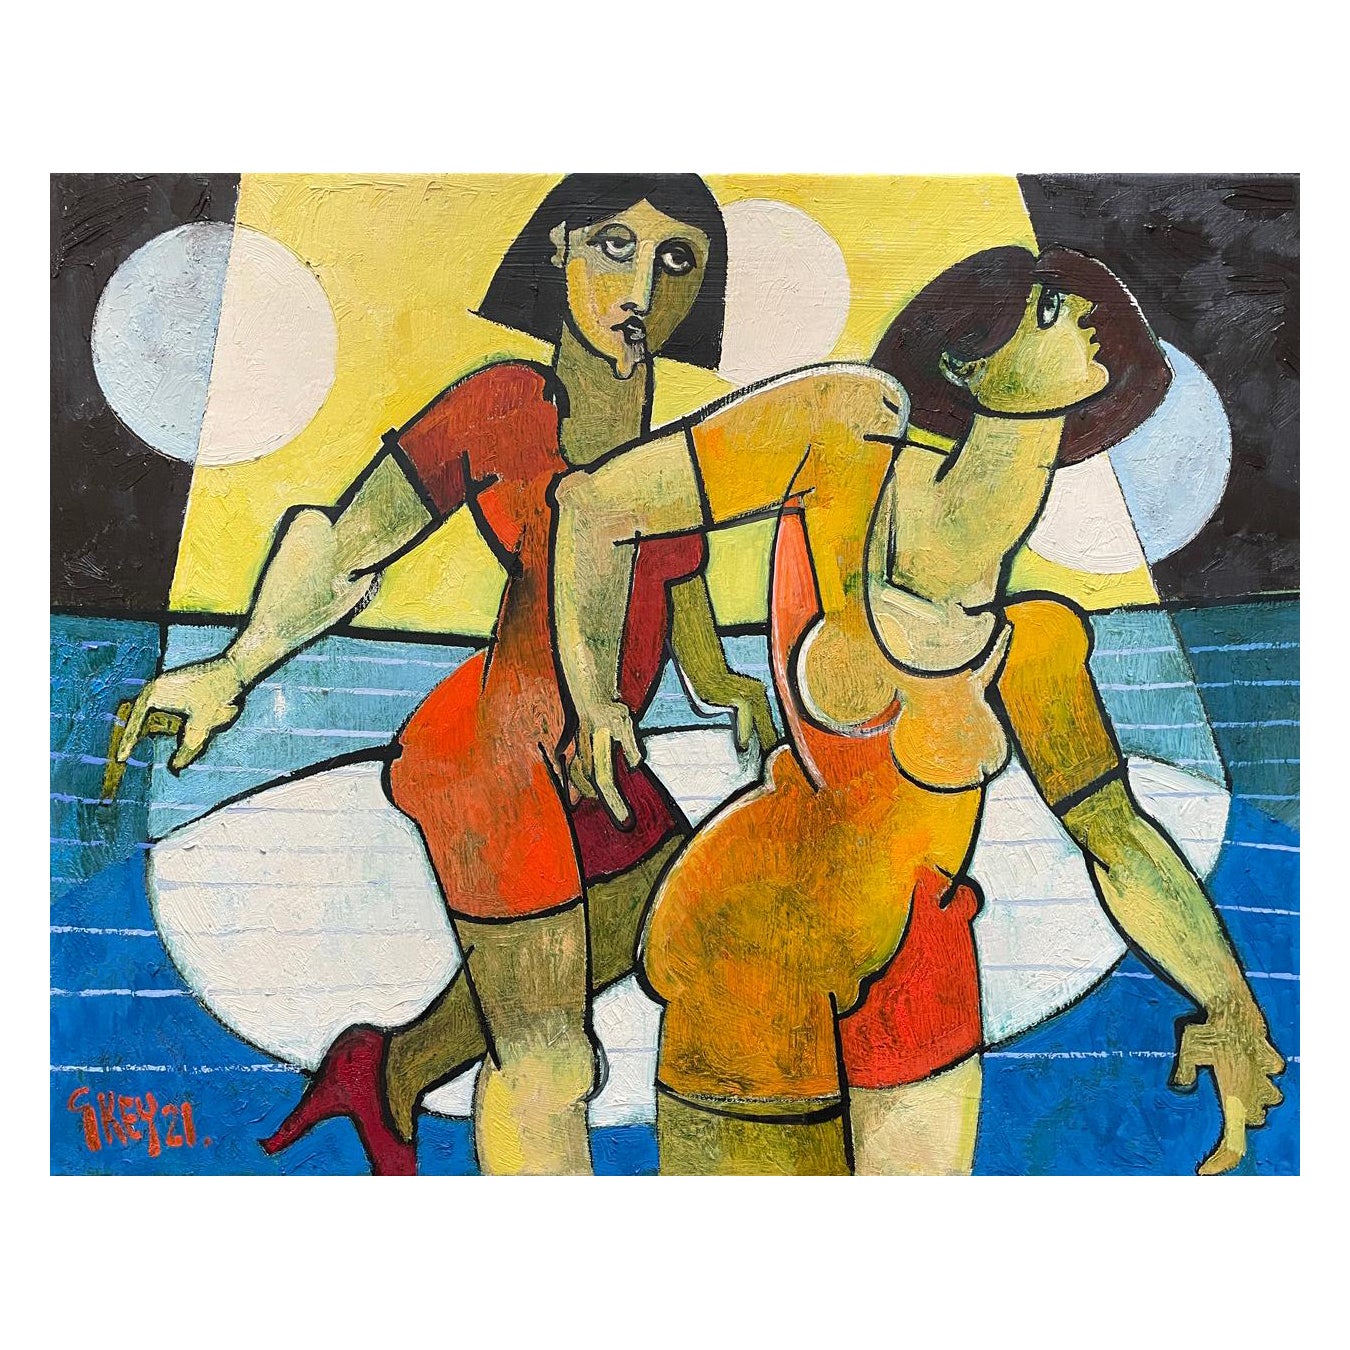 Geoffrey Key 'English', Oil On Canvas, Women Dancing, Dated 2021